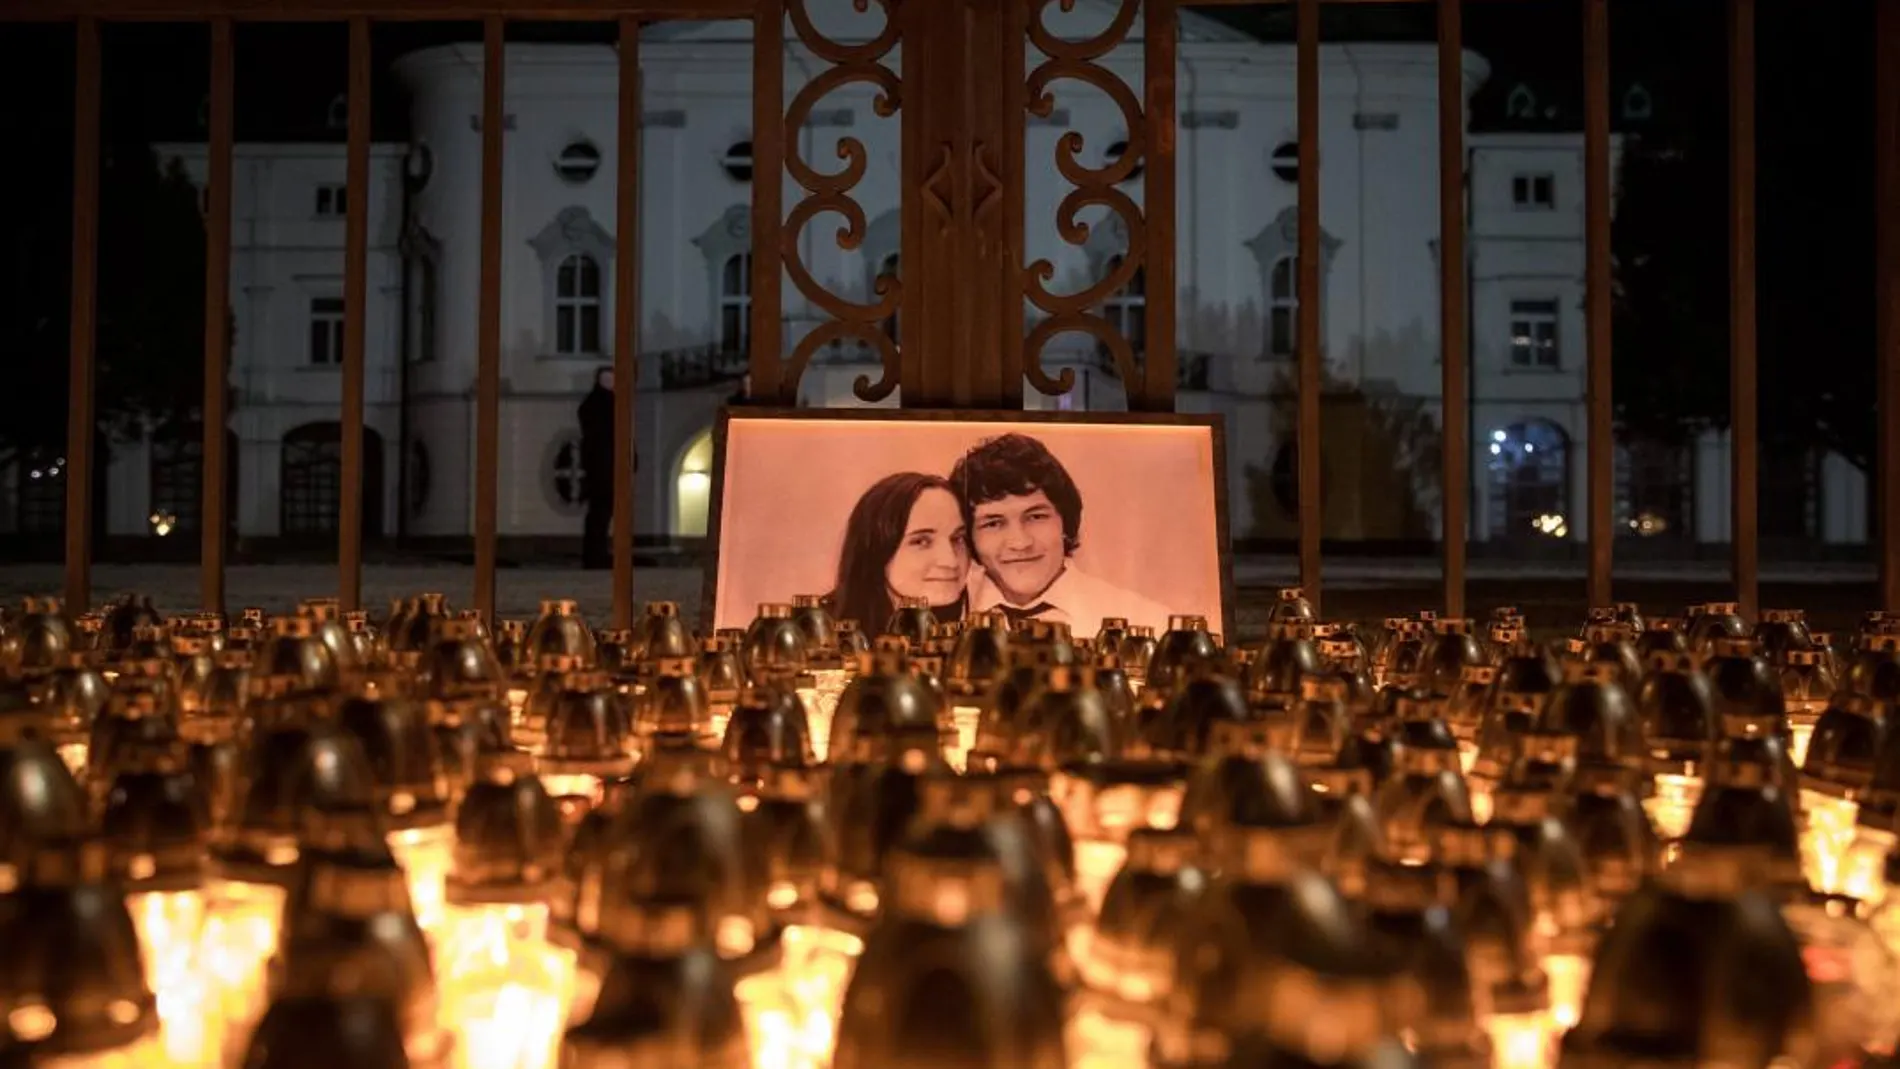 Un grupo de personas enciende velas antes de participar en una marcha en memoria del periodista eslovaco Jan Kuciak, asesinado junto a su novia Martina, frente a la sede del Gobierno en Bratislava (Eslovaquia) ayer